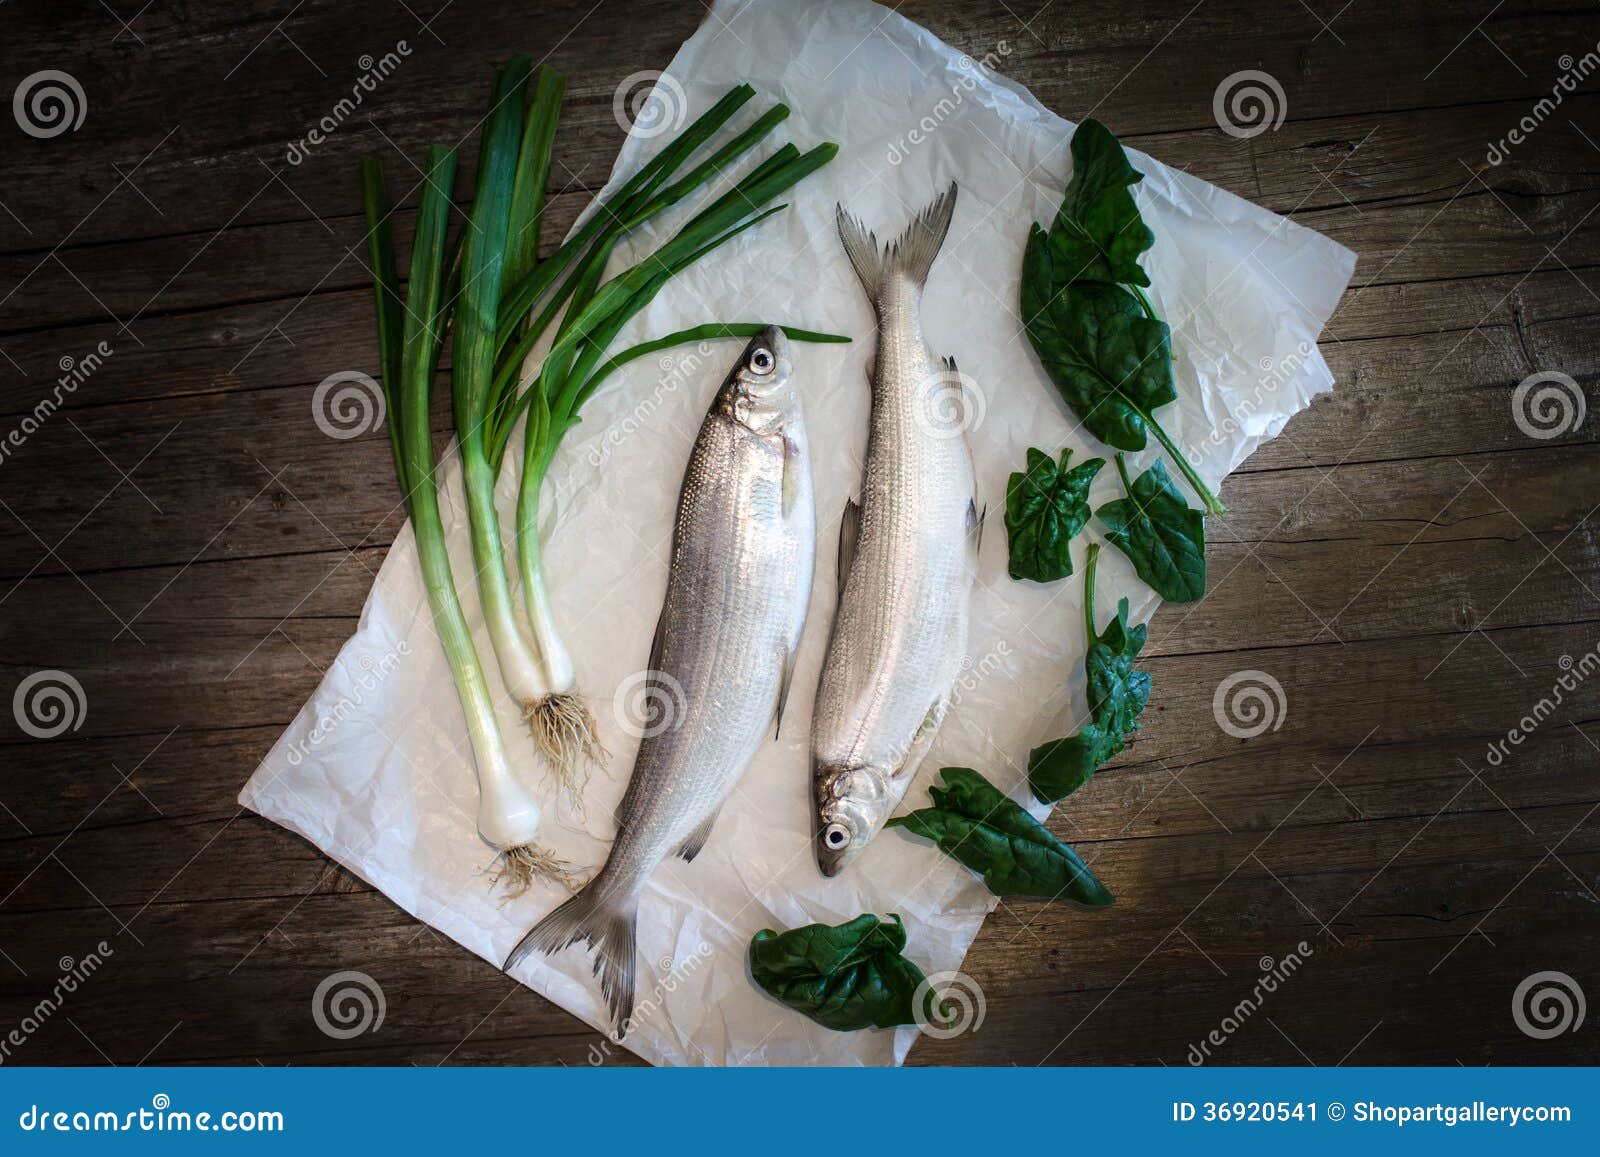 freshwater whitefish (coregonus lavaretus)